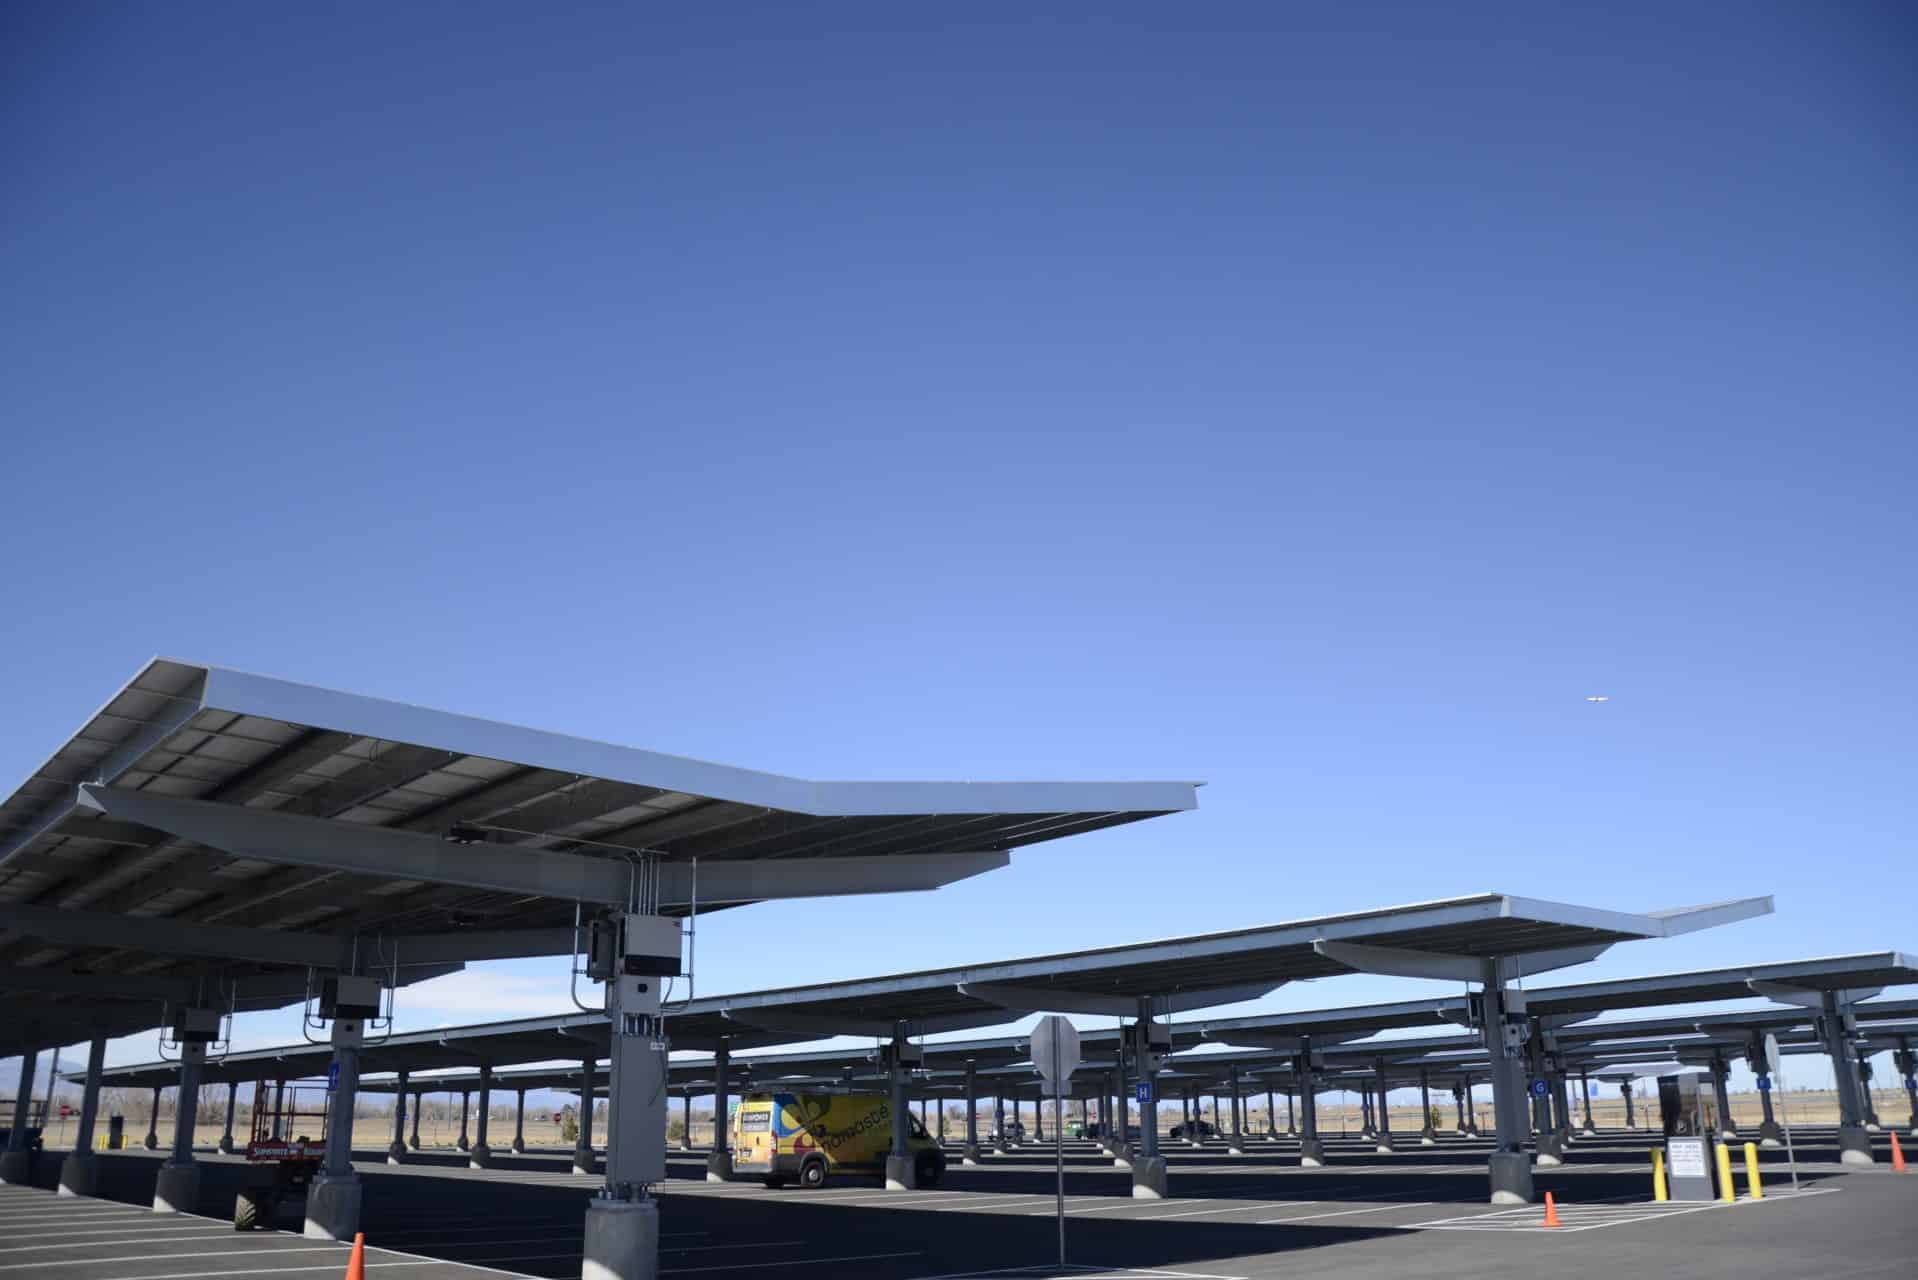 commercial solar panel carport installation in parking lot denver